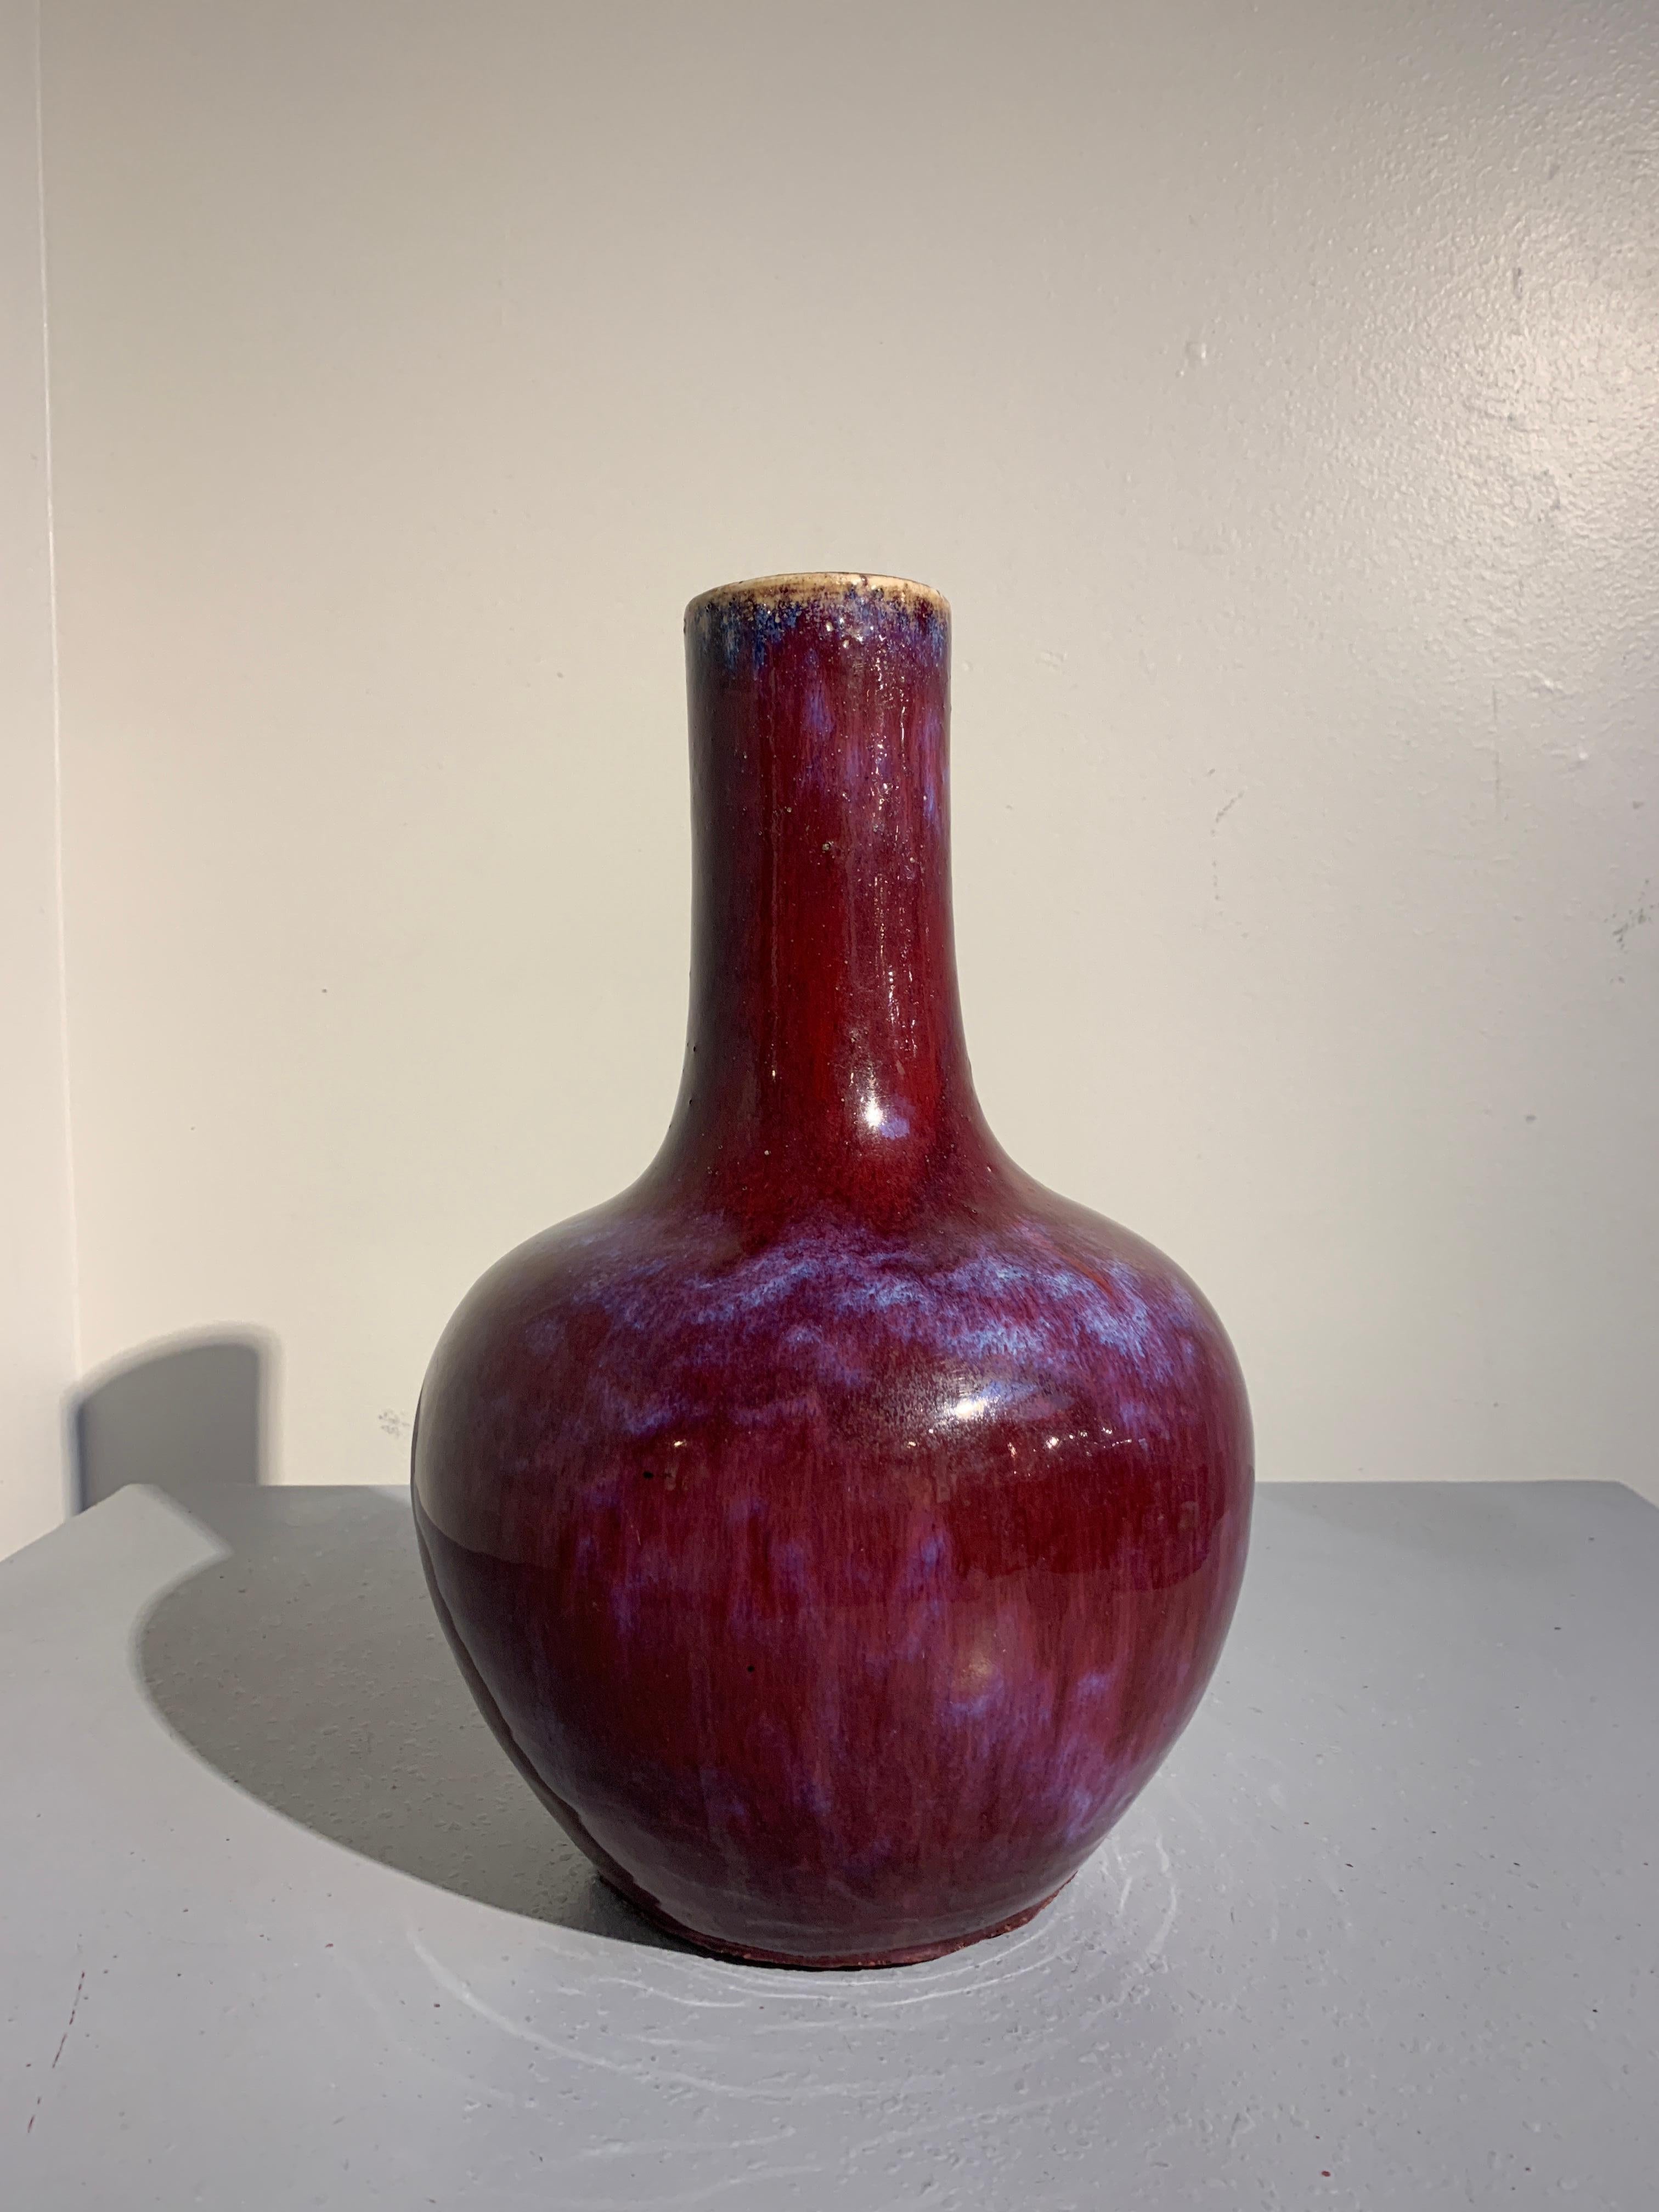 Eine prächtige chinesische, einfarbig rot flambierte Flaschenvase, genannt Tianqiuping, Qing-Dynastie, Ende 19. 

Der üppige Körper der Vase hat eine kugelförmige Gestalt, die sich zu breiten Schultern und einem hohen Stockhals erhebt. Die Vase